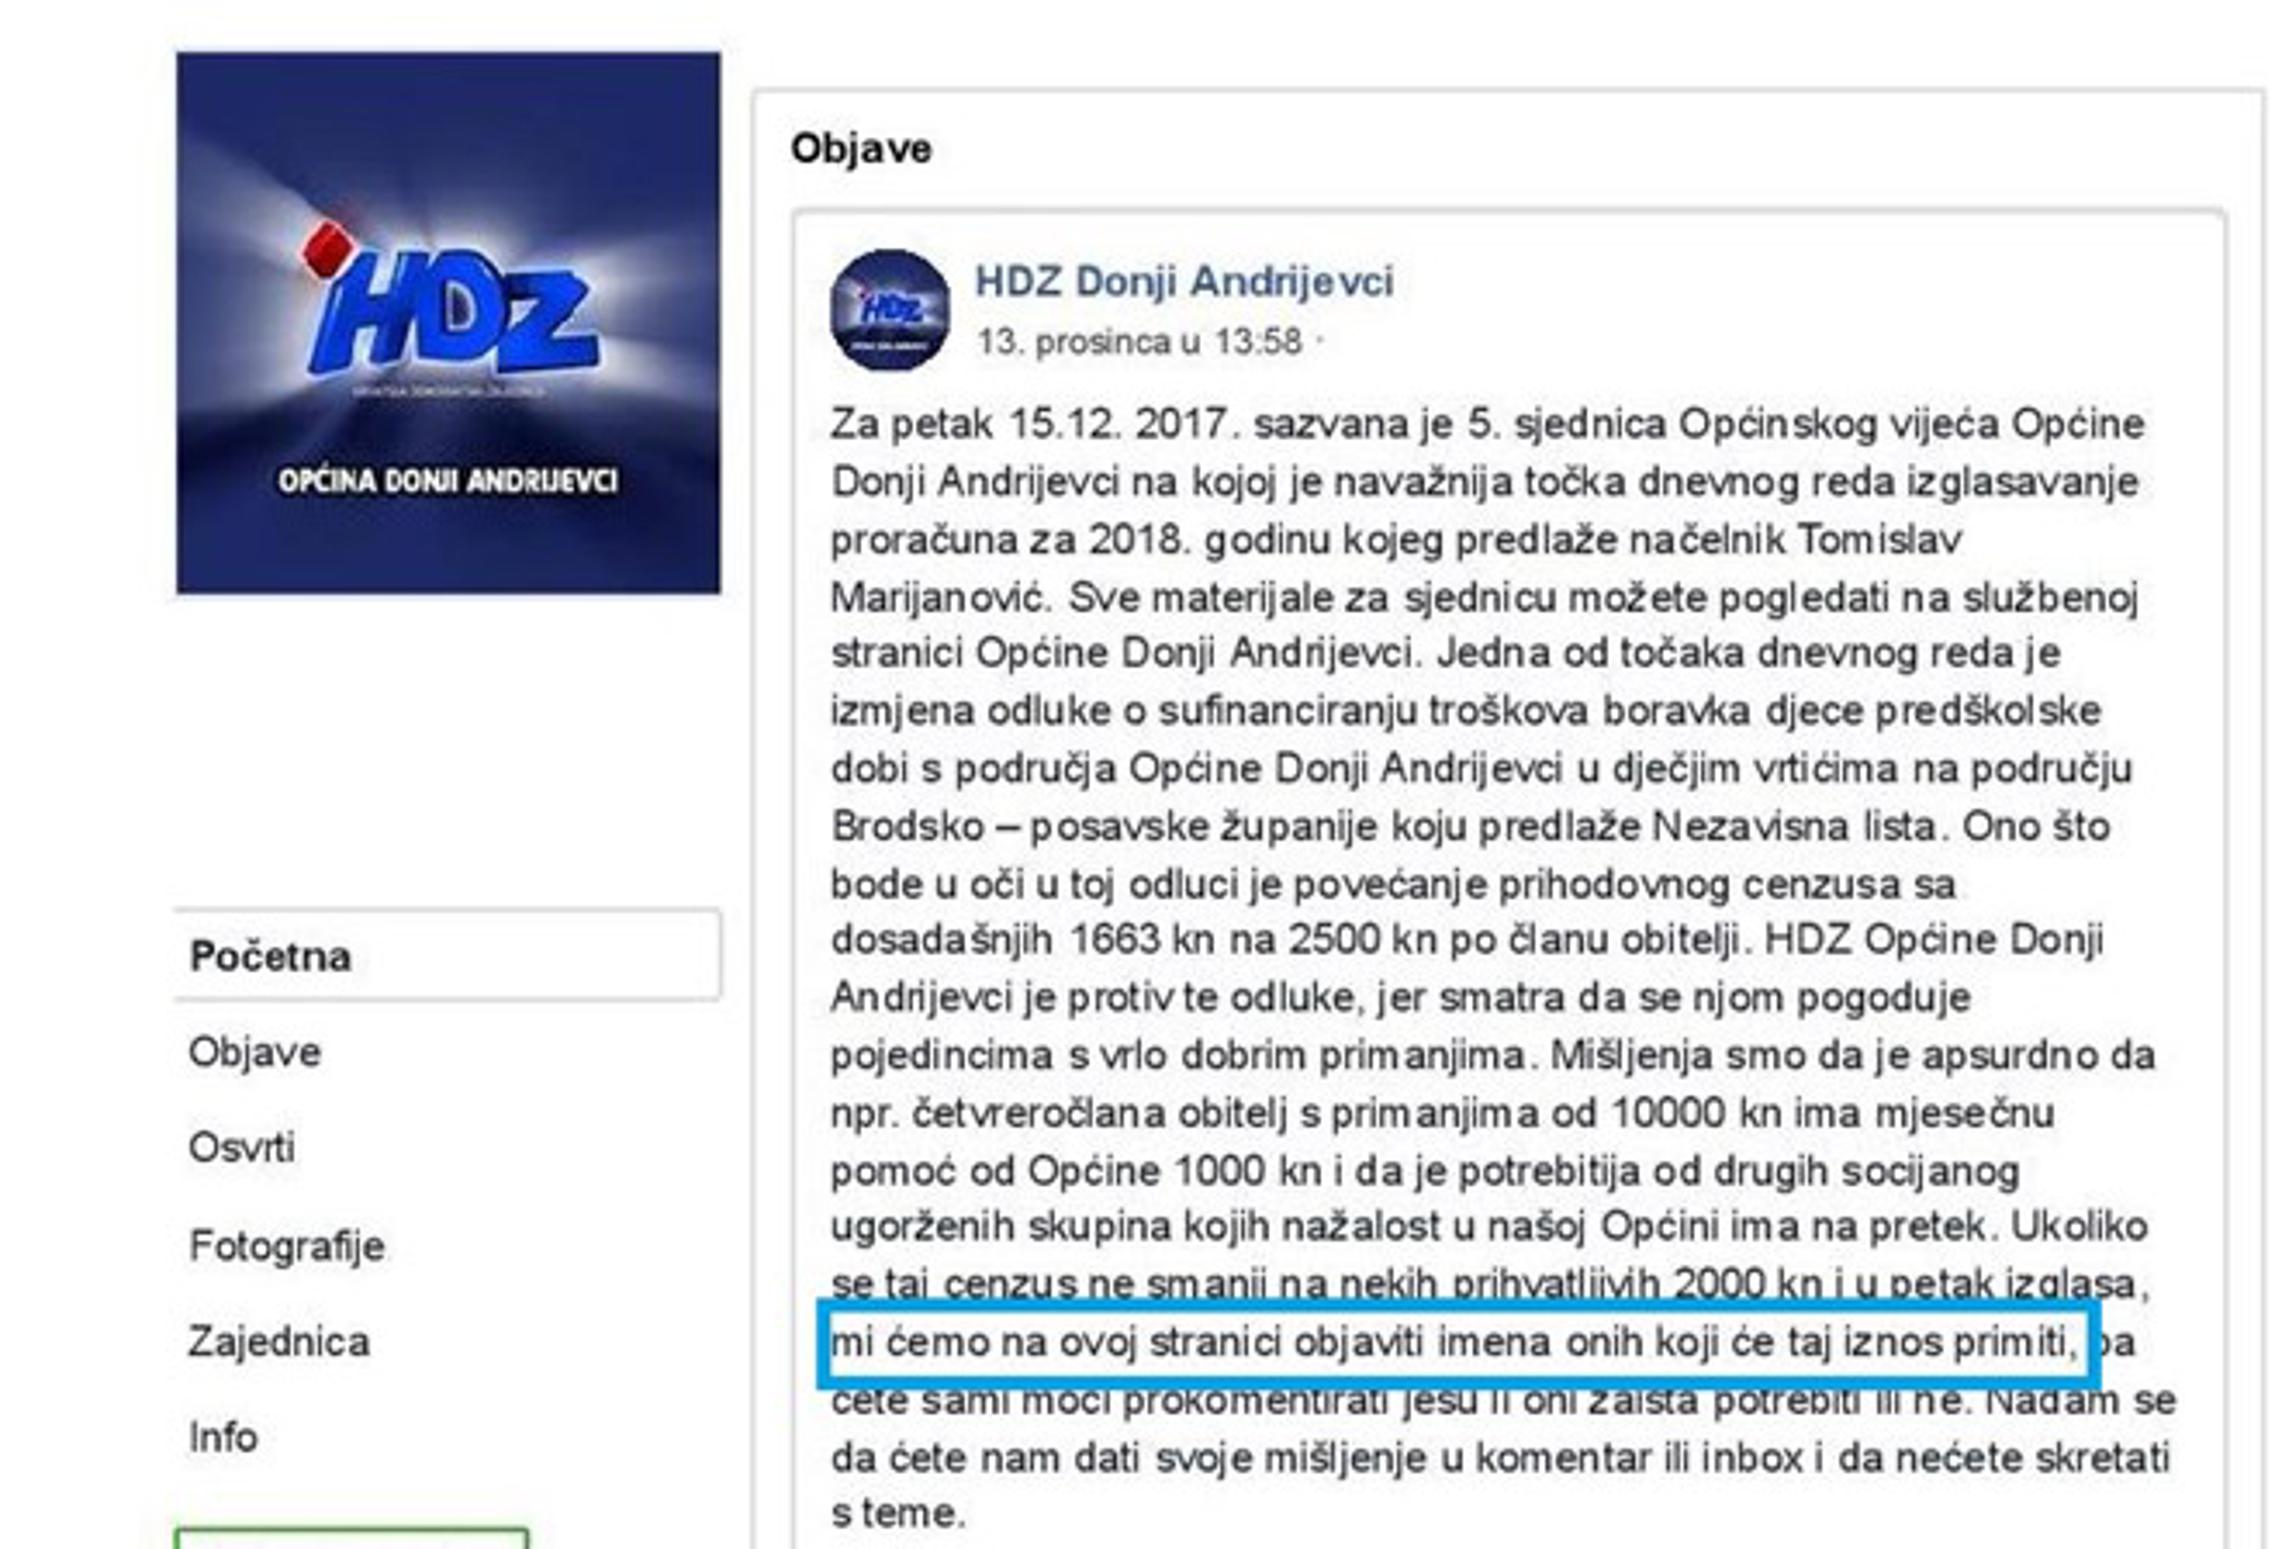 Objava na profilu HDZ-a Doni Andrijevci od 13.12.2017.